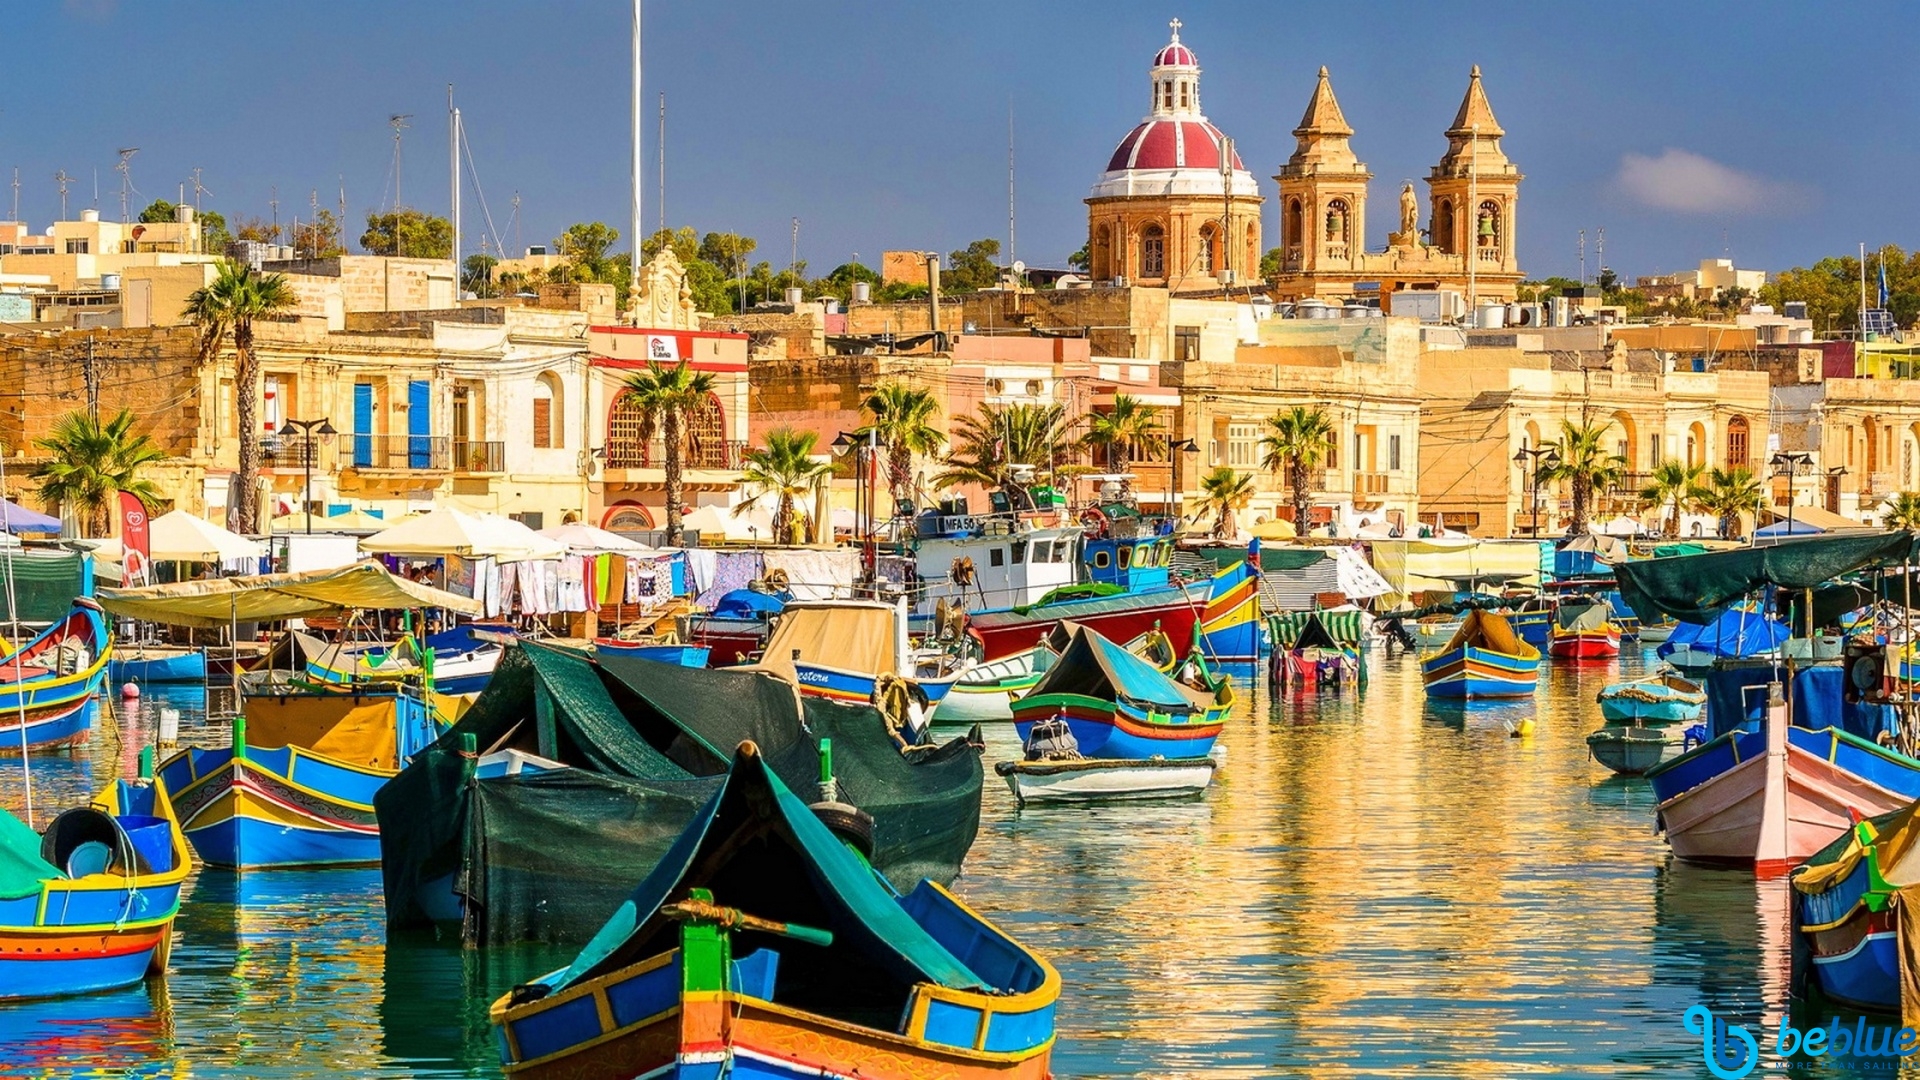 Le 3 isole maltesi: Malta, Gozo e Comino